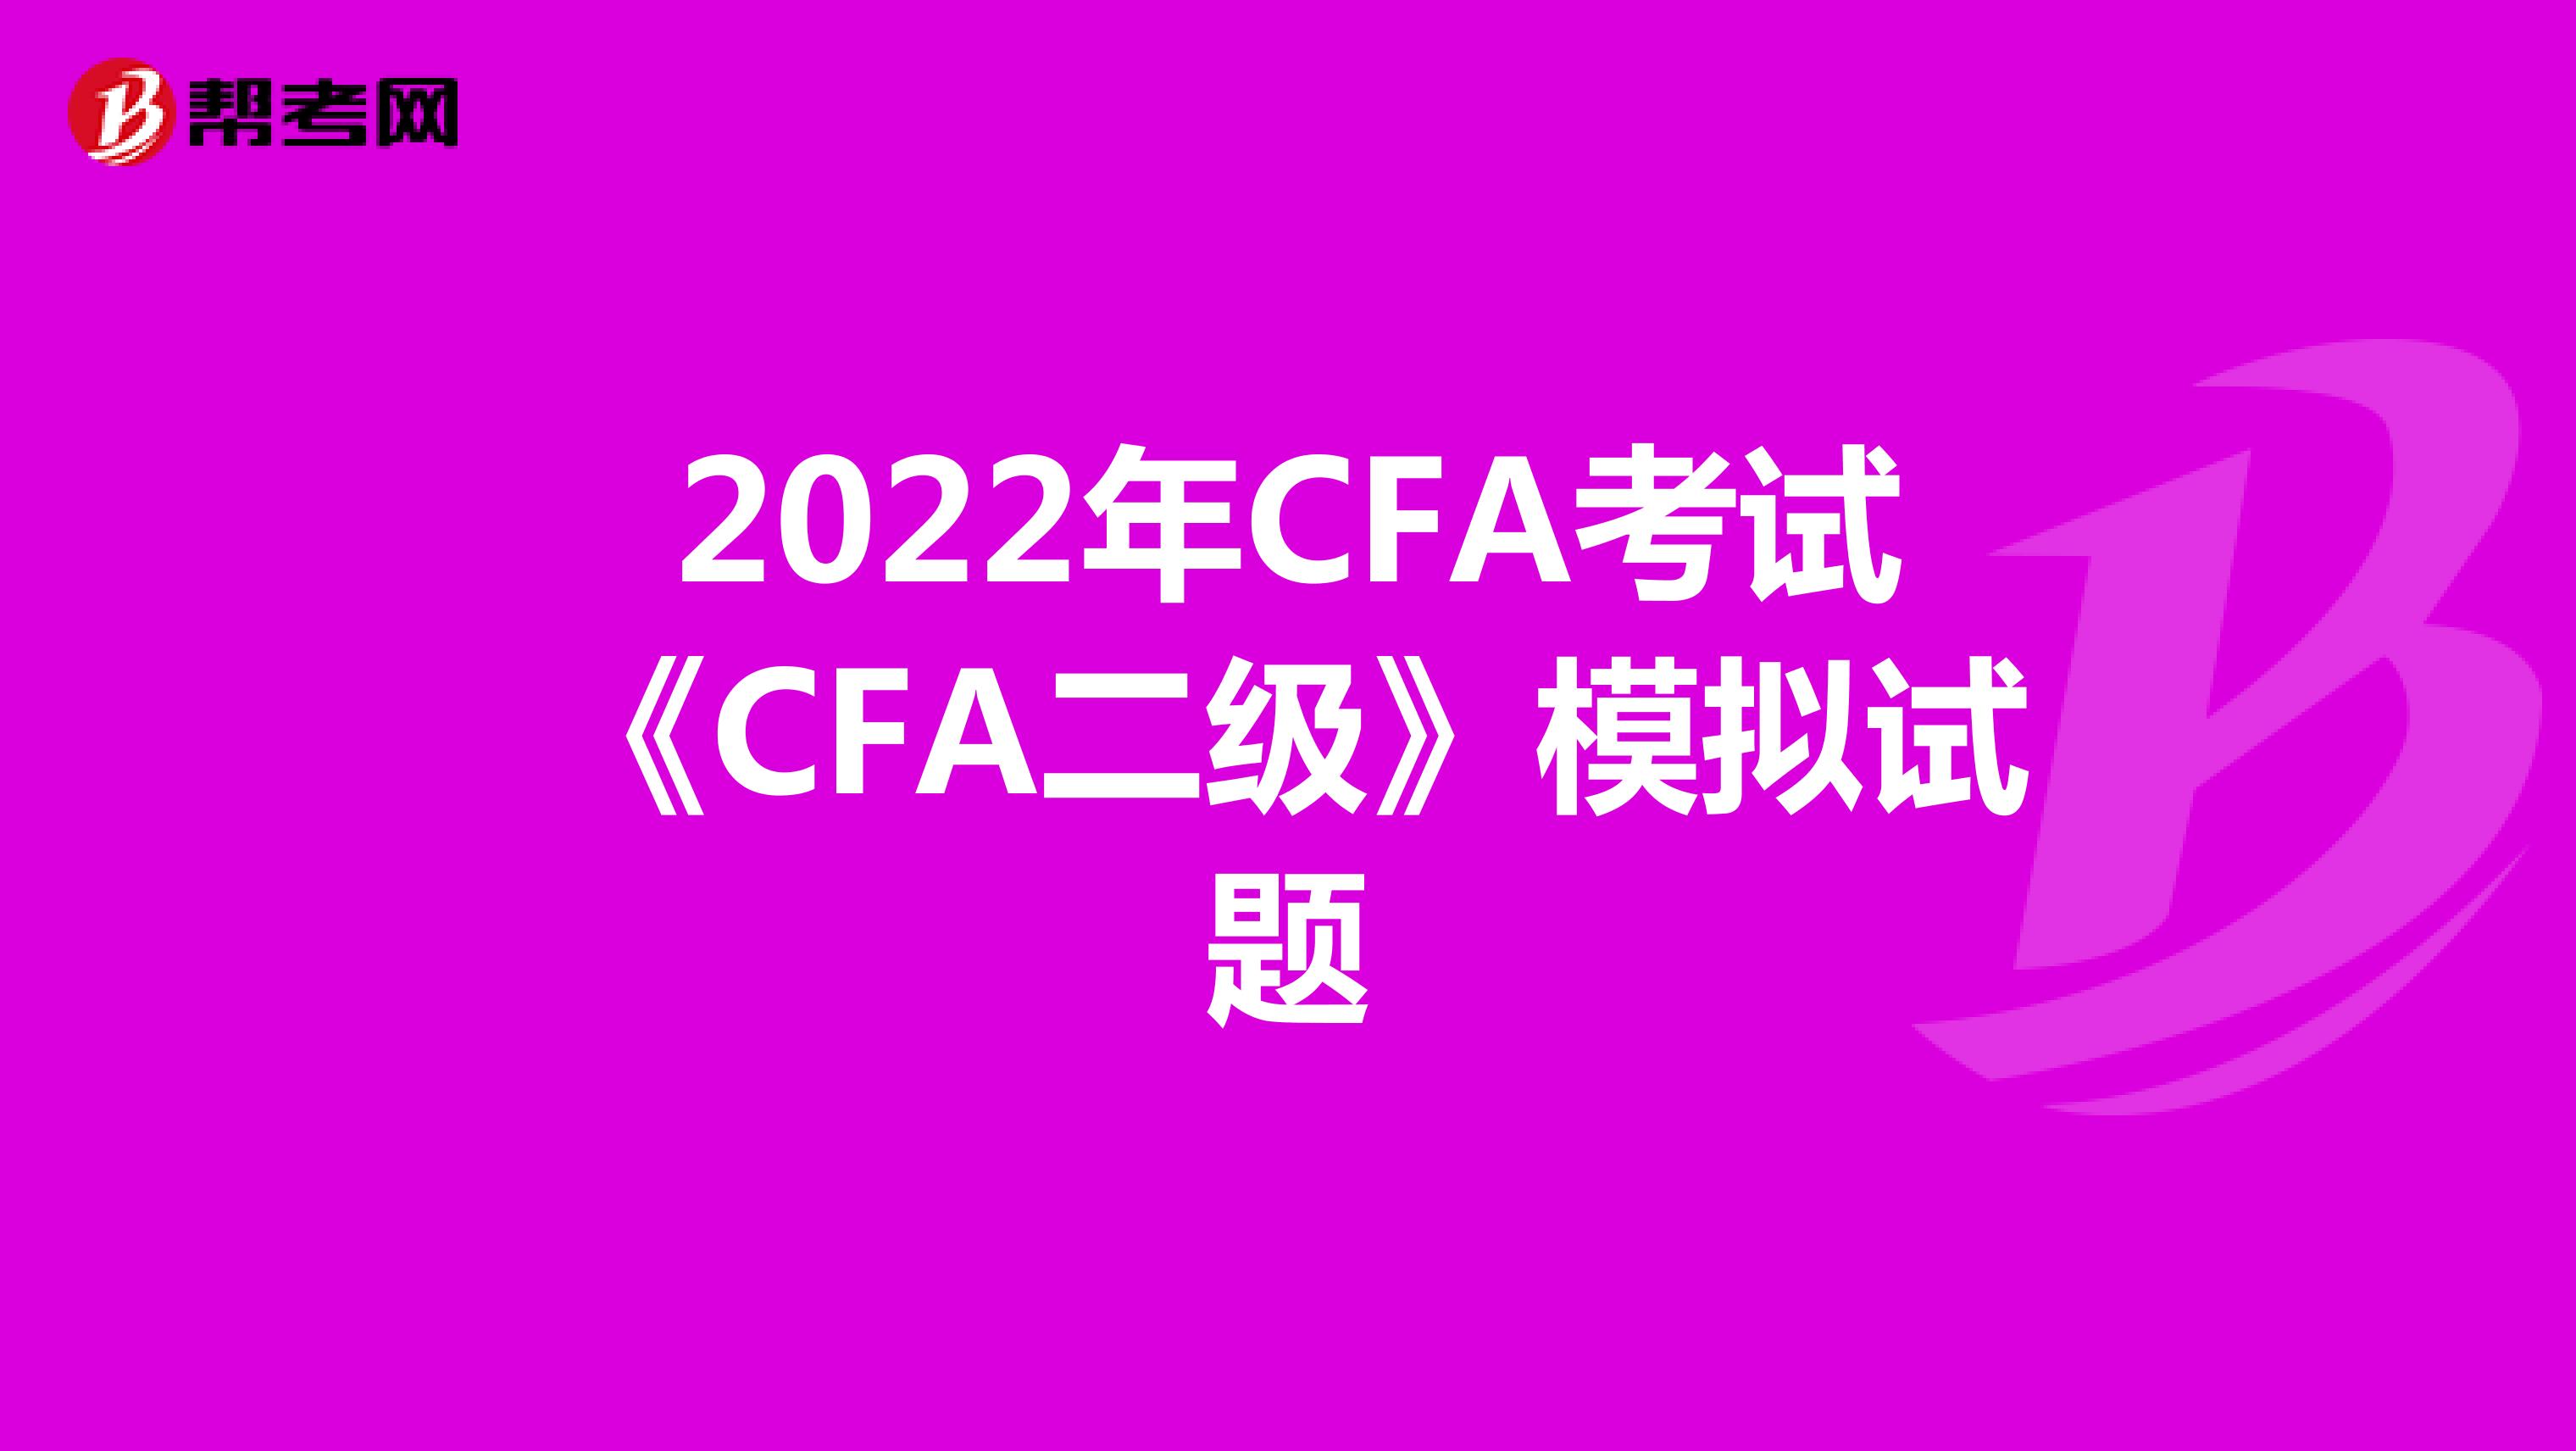 2022年CFA考试《CFA二级》模拟试题